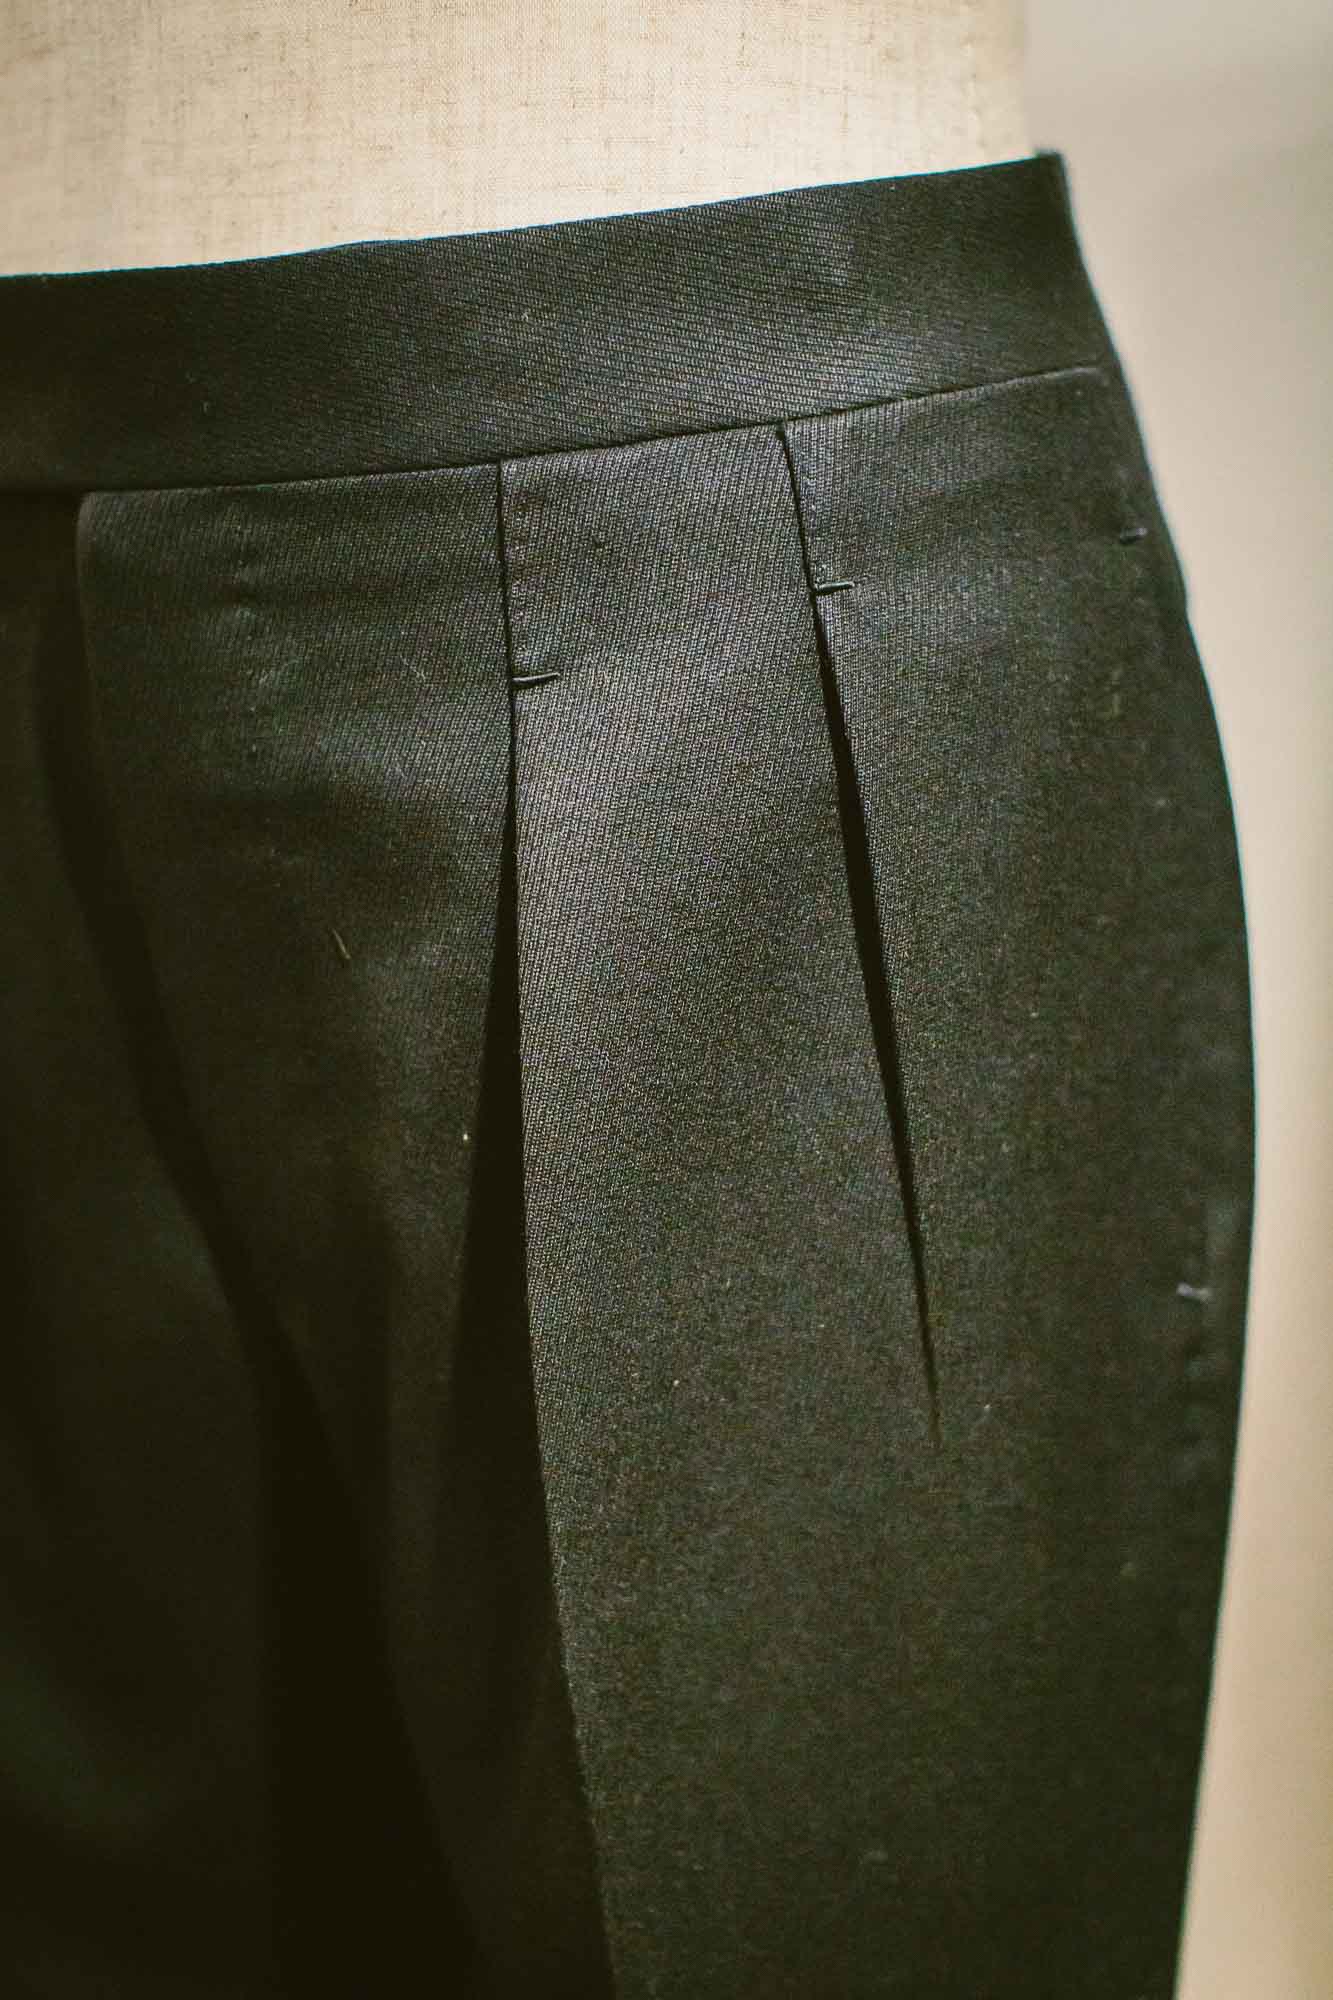 X-Factor Mens Long Pleat Front Business Pants Trousers size 77 Colour Black  | eBay